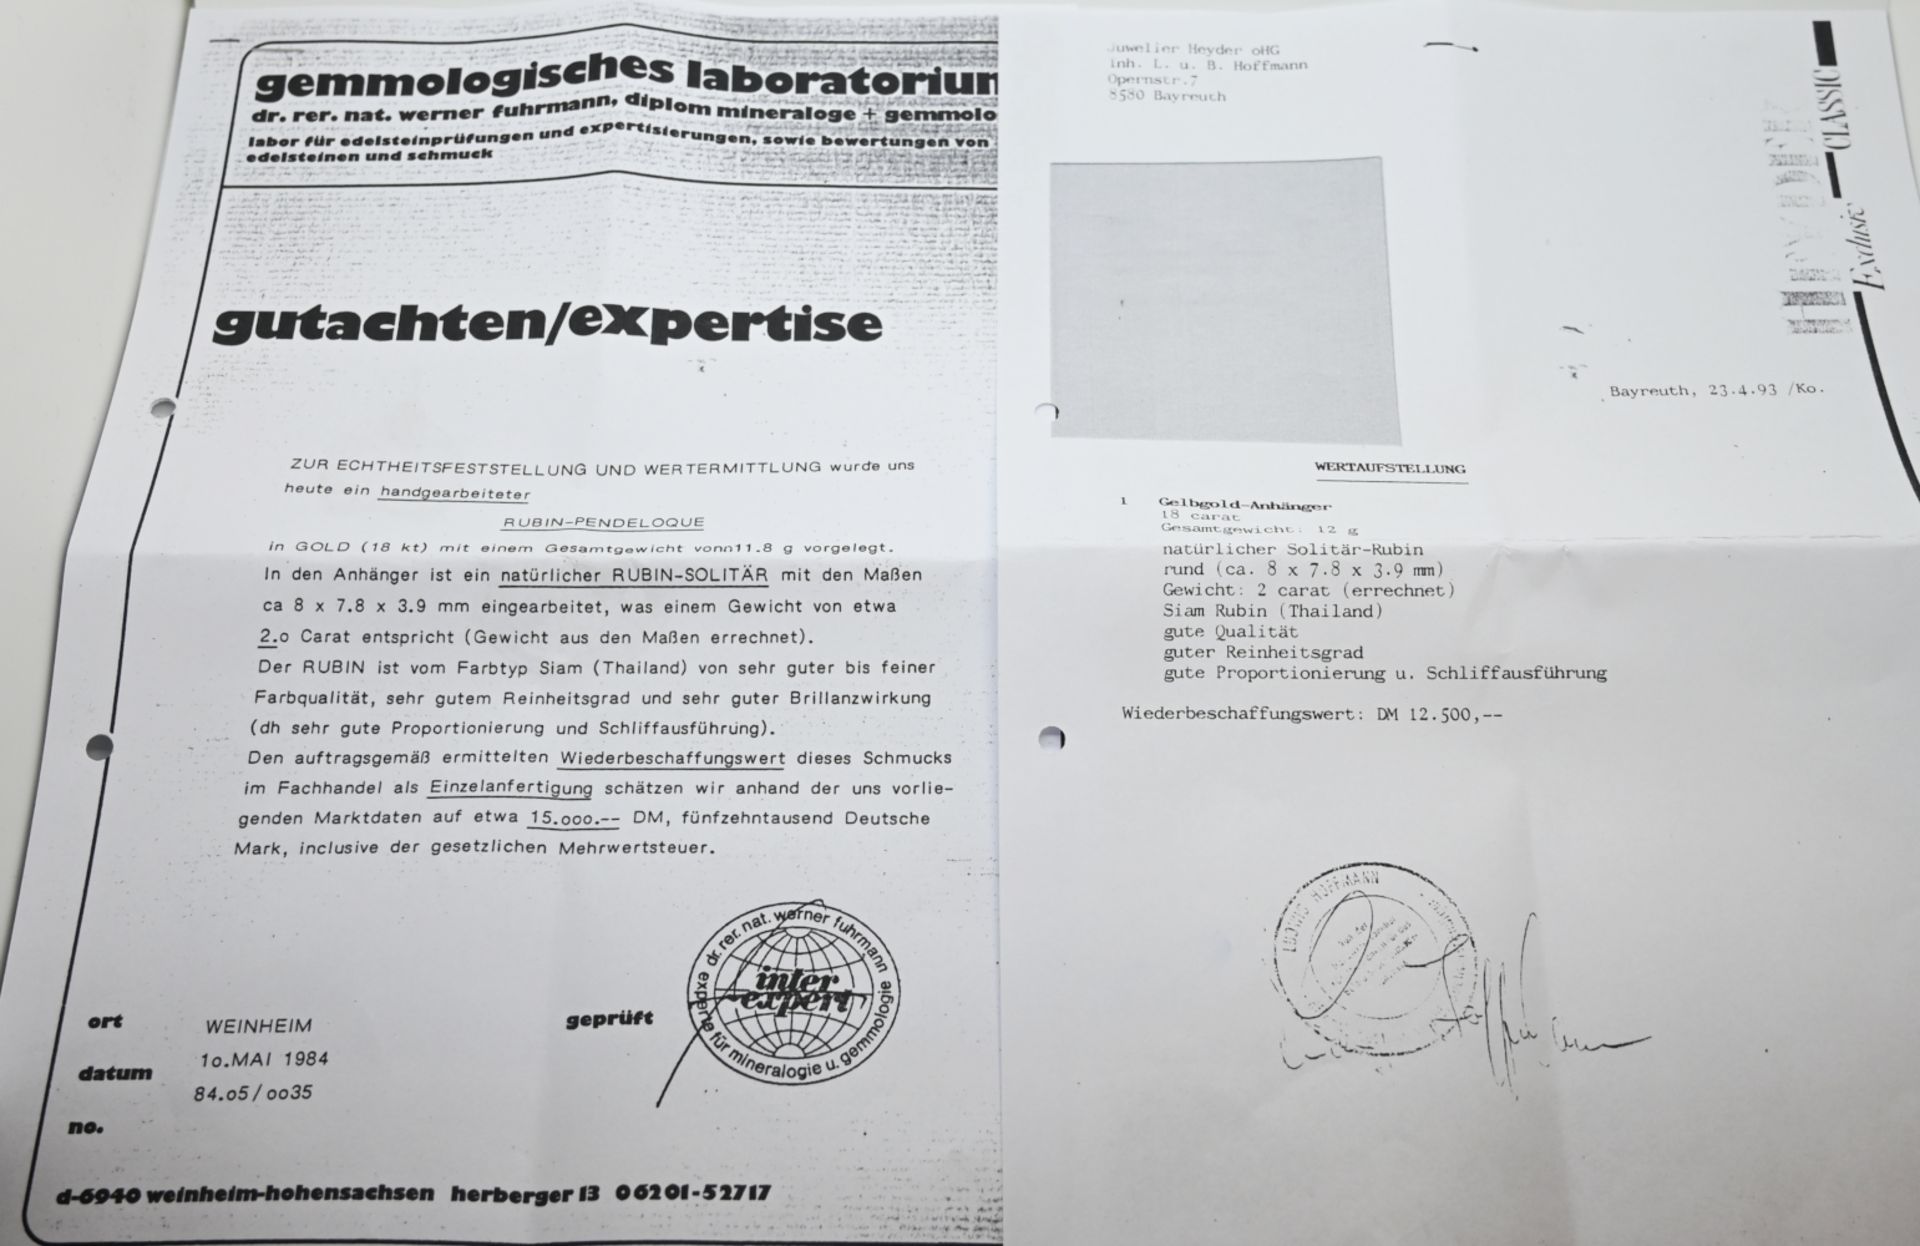 1 Anhänger/Brosche GG 18ct., laut Gutachten/Expertise vom Gemmologischen Labor 1984 und Wertaufstell - Image 3 of 3